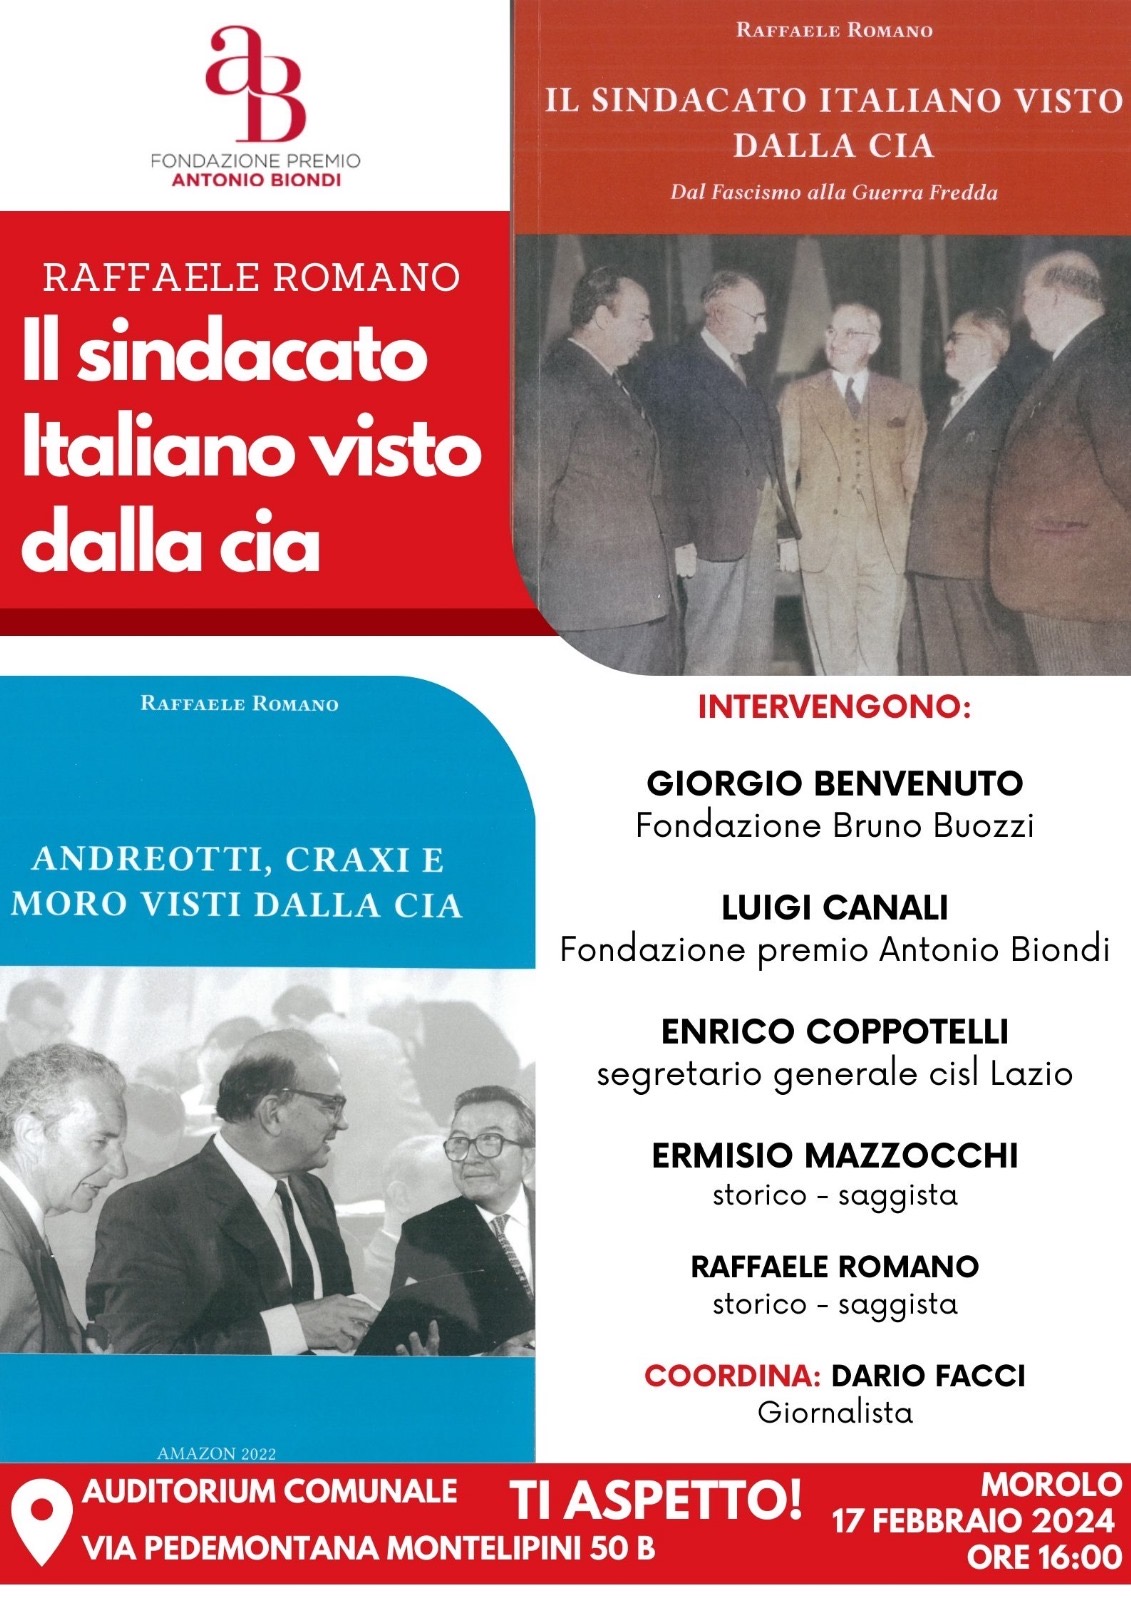 Sabato 17 febbraio 2024, ore 16,00. Morolo (Frosinone), Presentazione del libro di Raffaele Romano ’Il sindacato italiano visto dalla CIA